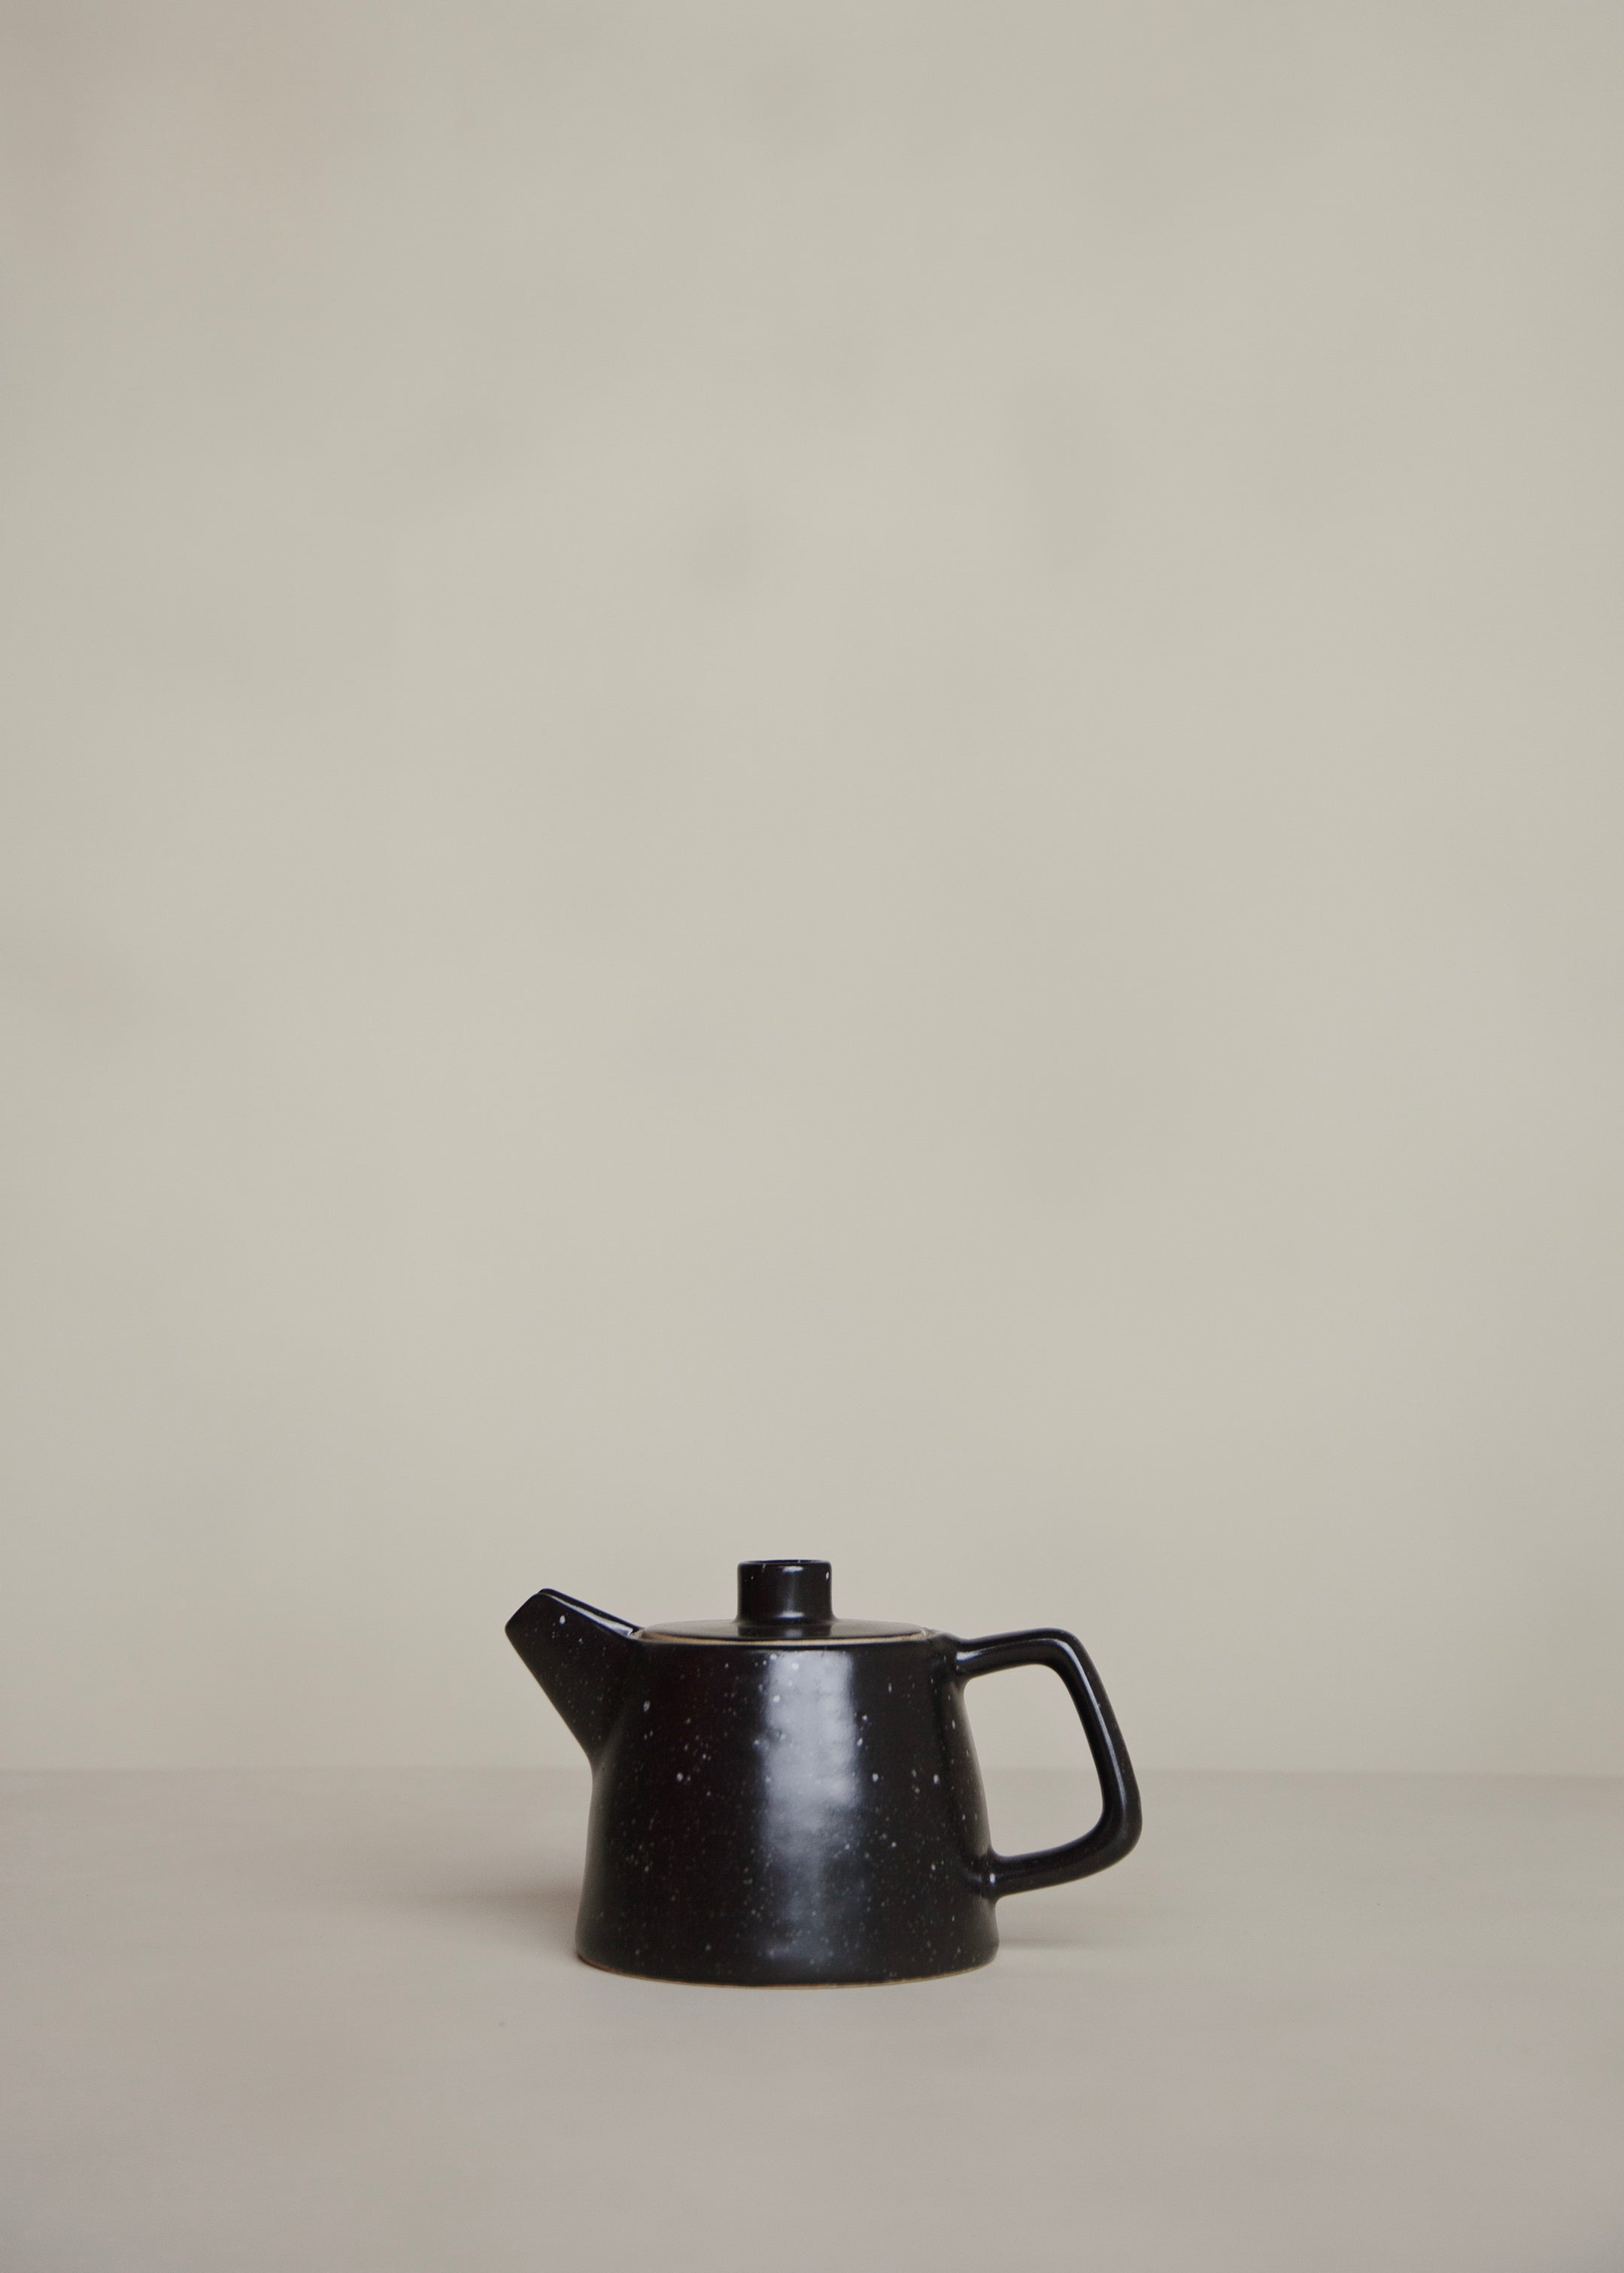 Ageng Tea Pot / Speckled Black